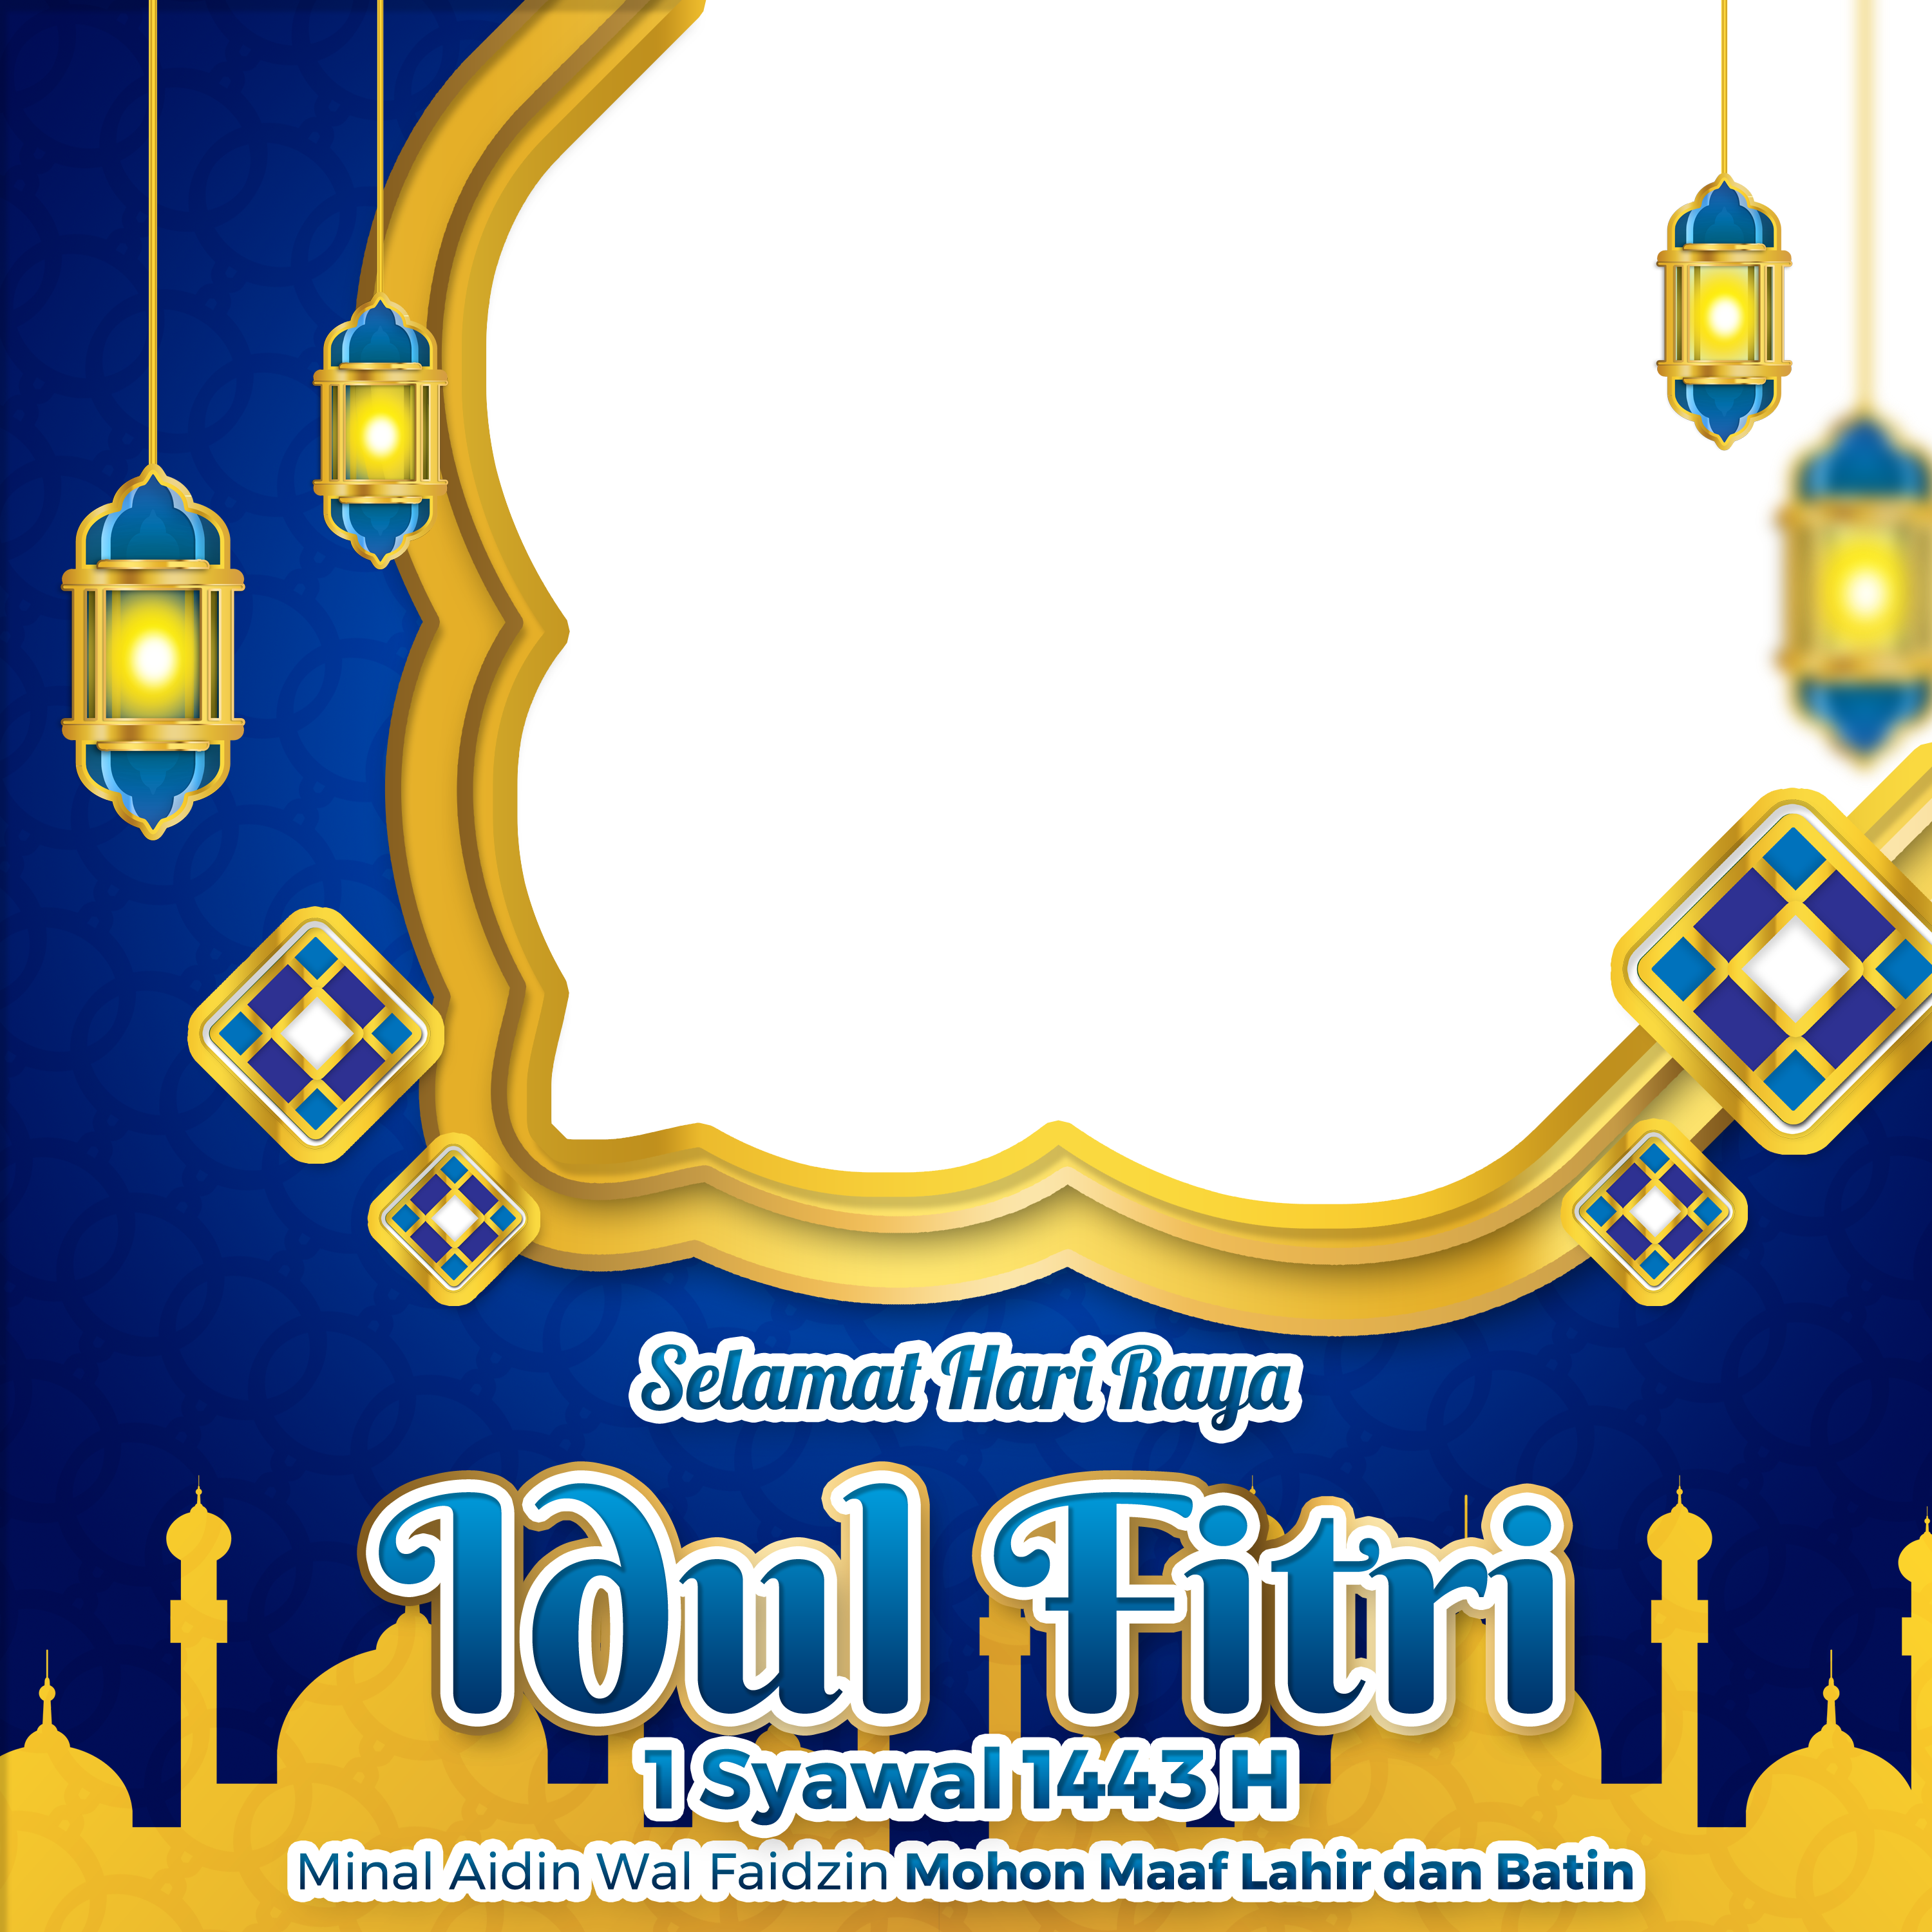 Bingkai Selamat Hari raya Idul Fitri twibbic.com 